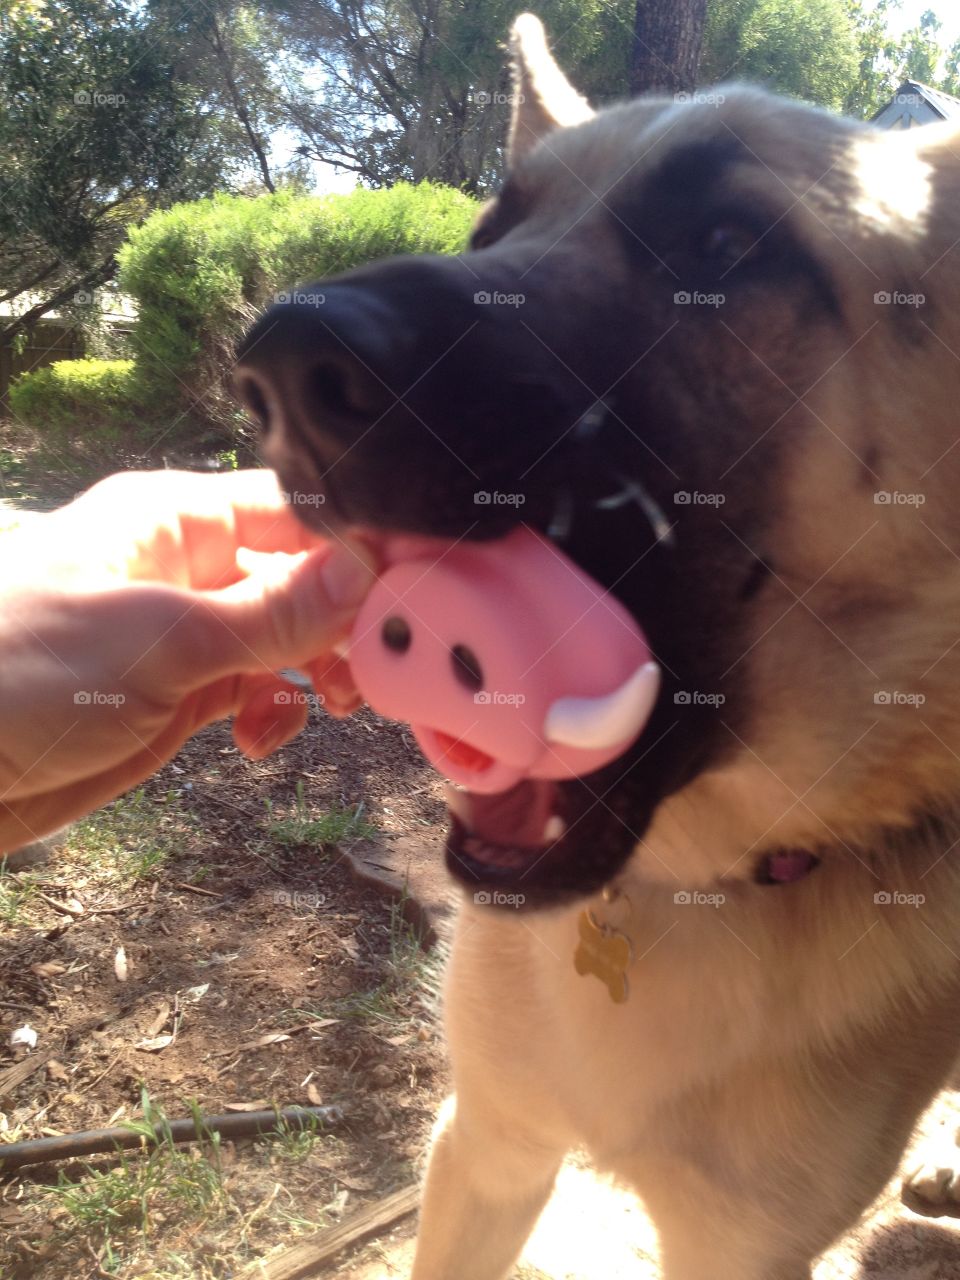 German shepherd chewing hog snout play fun